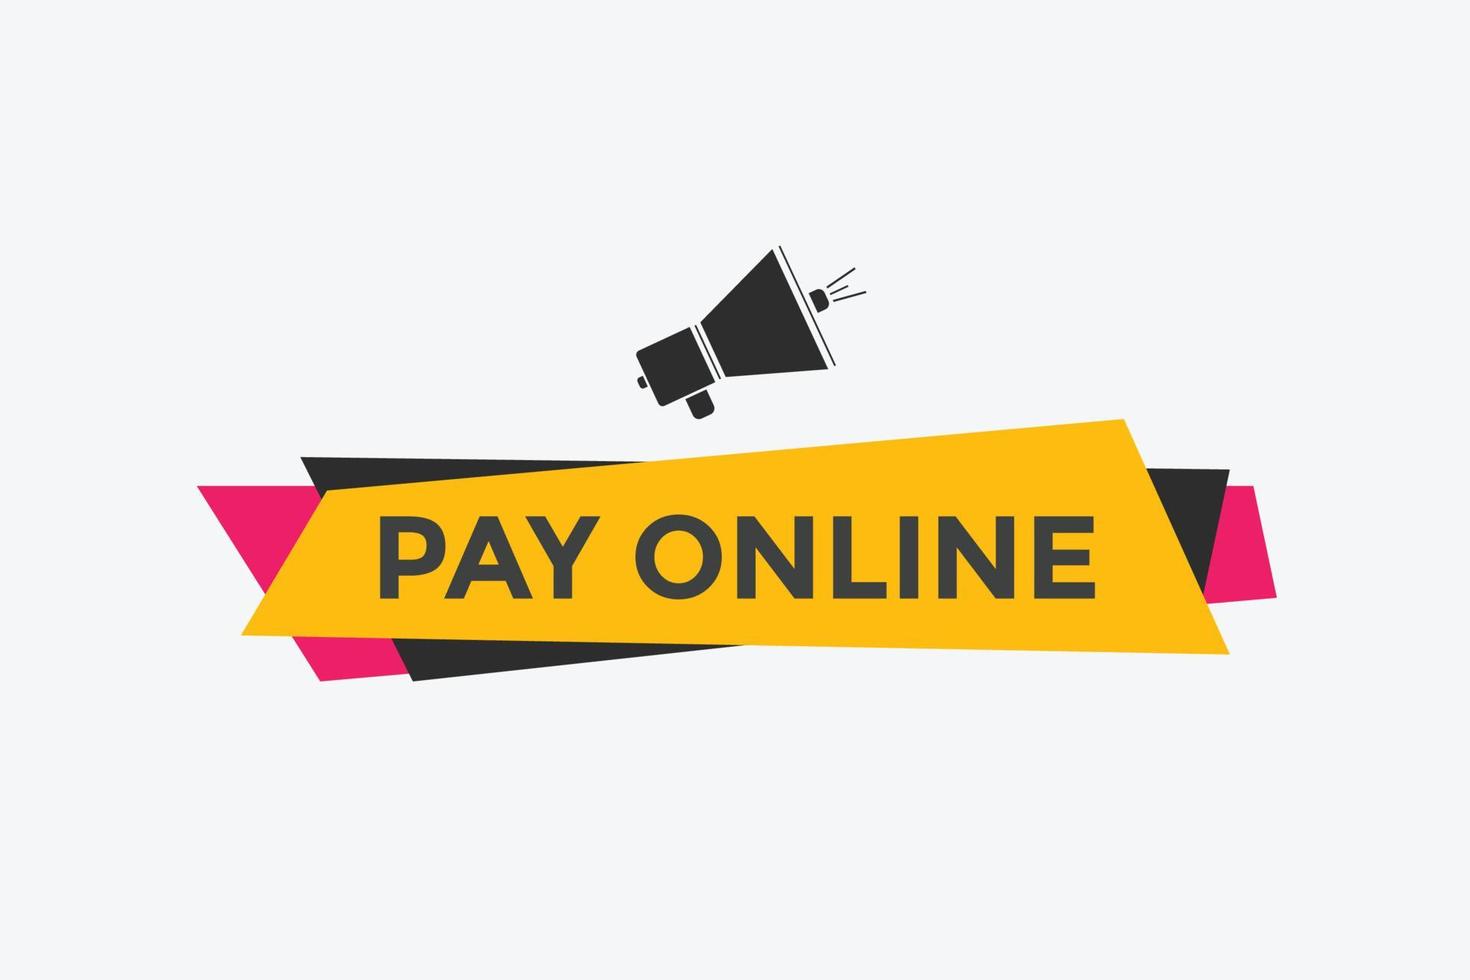 botão de pagamento on-line. Balões de fala. pague o modelo de web colorido de texto on-line. ilustração vetorial vetor